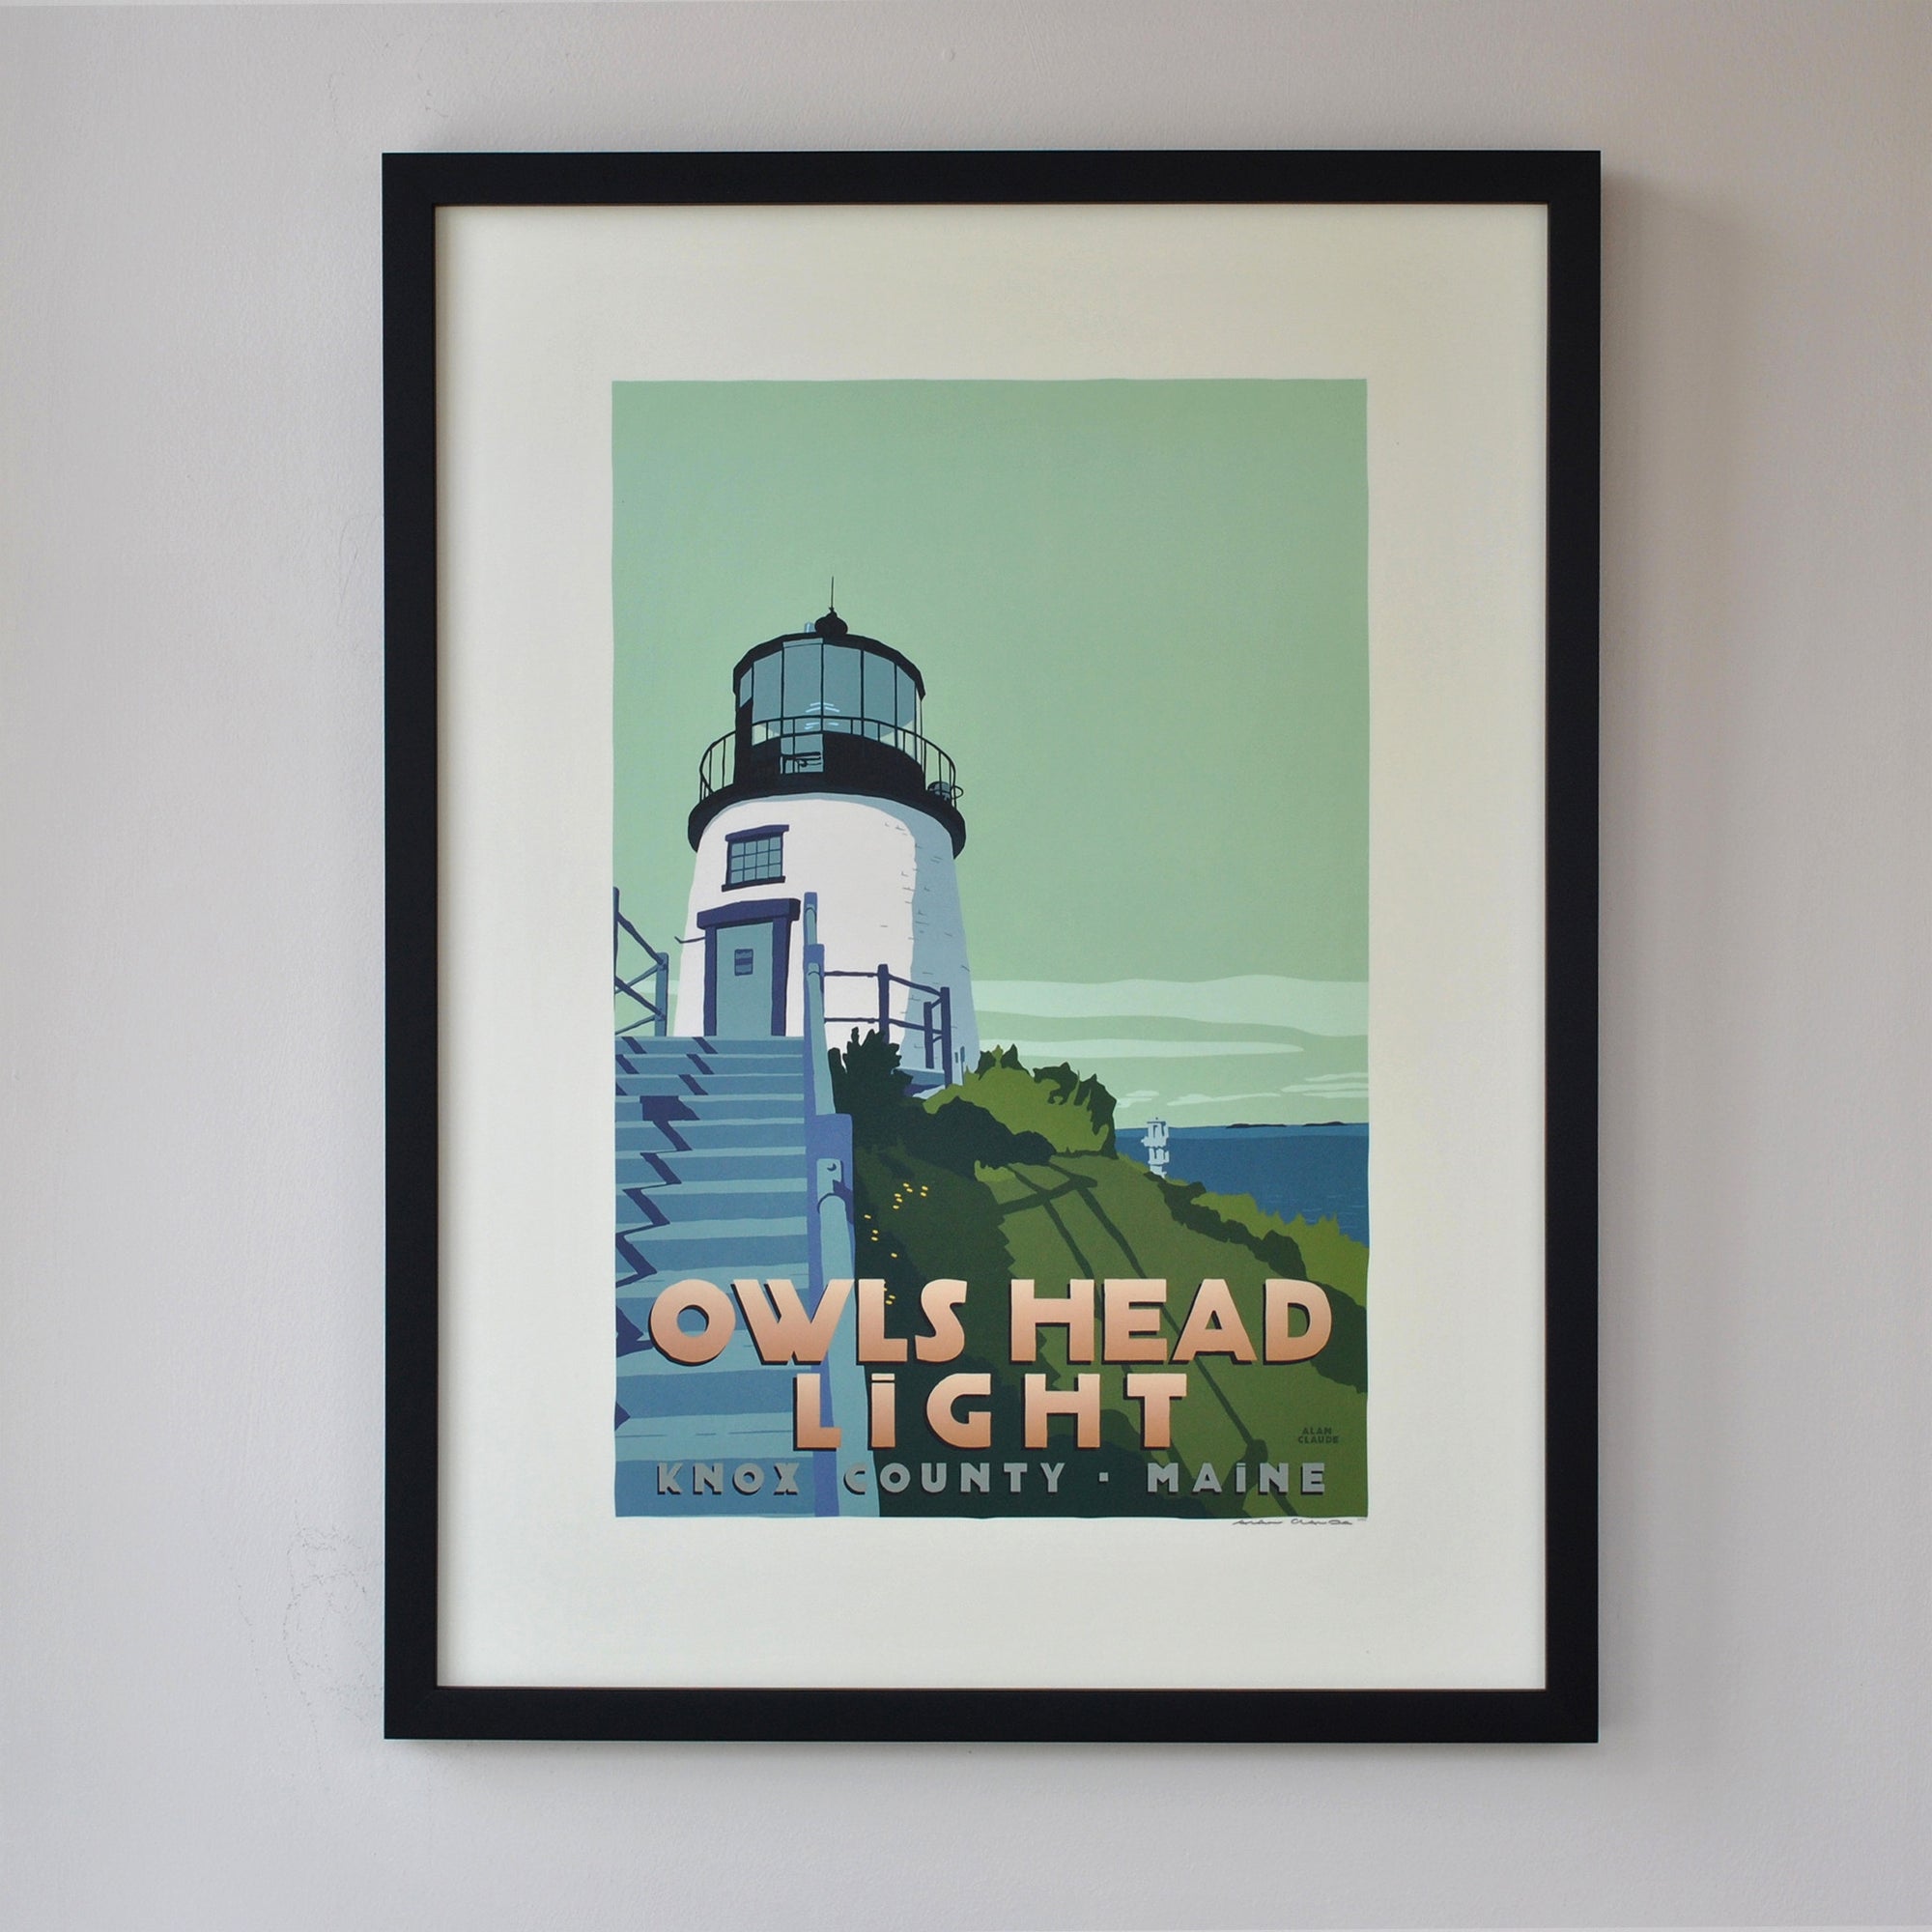 Owls Head Light Art Print 18" x 24" Framed Travel Poster By Alan Claude - Maine